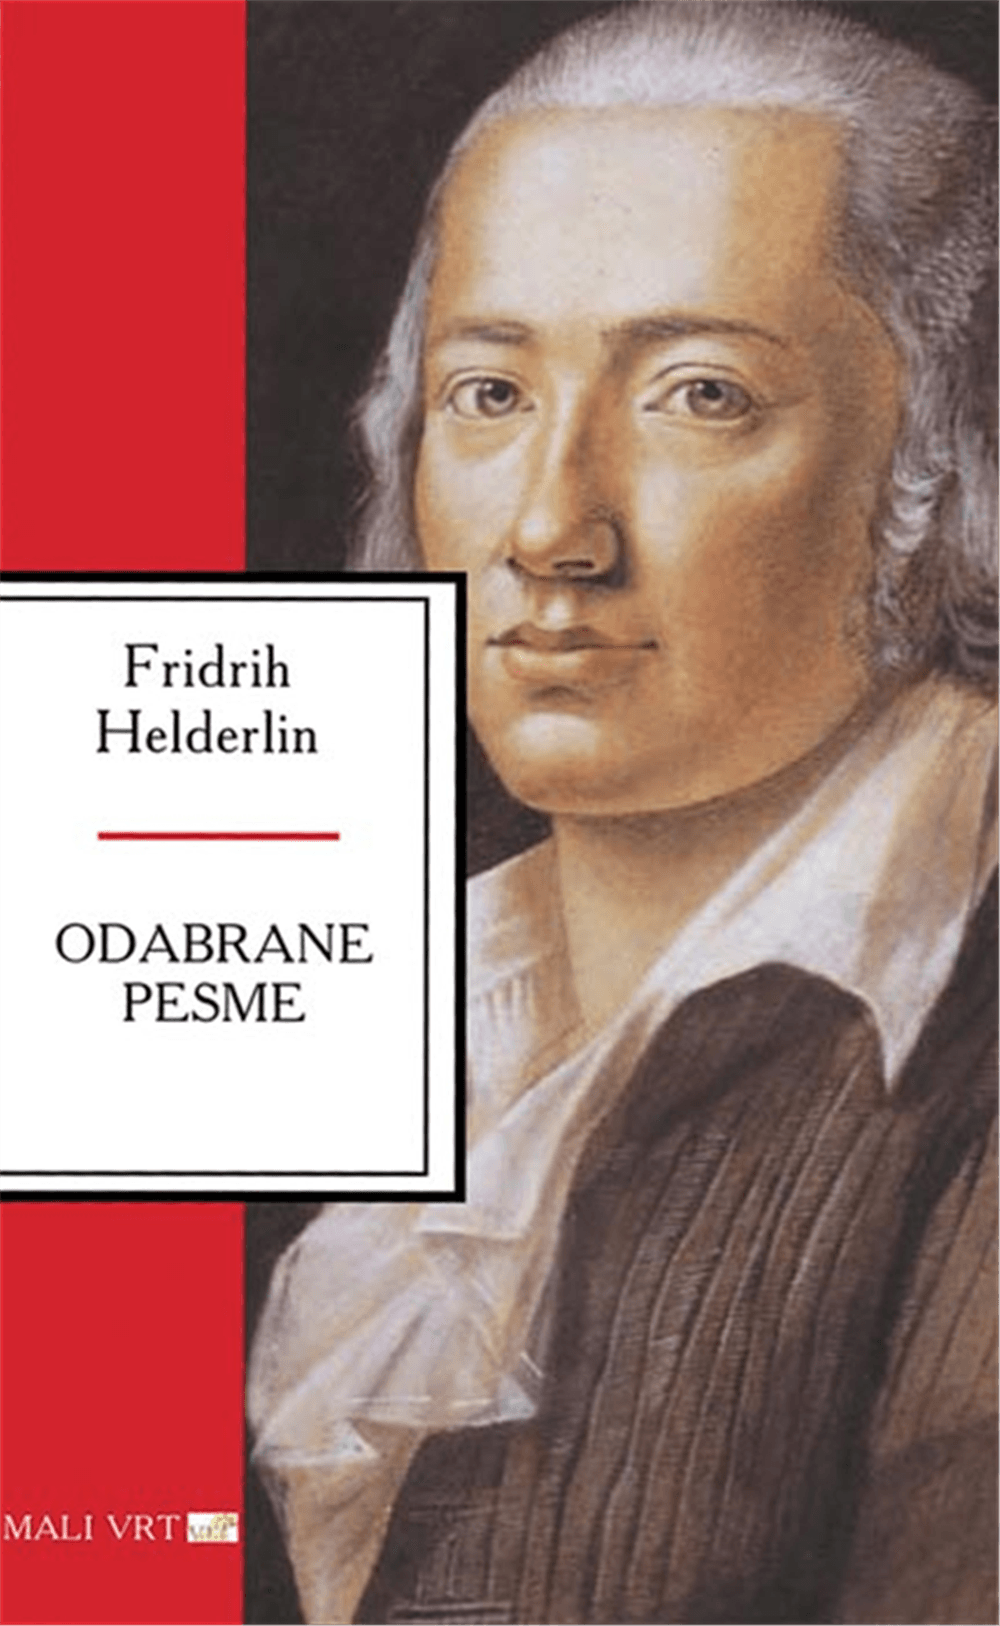 Selected image for Odabrane pesme - Fridrih Helderlin - Fridrih Helderlin